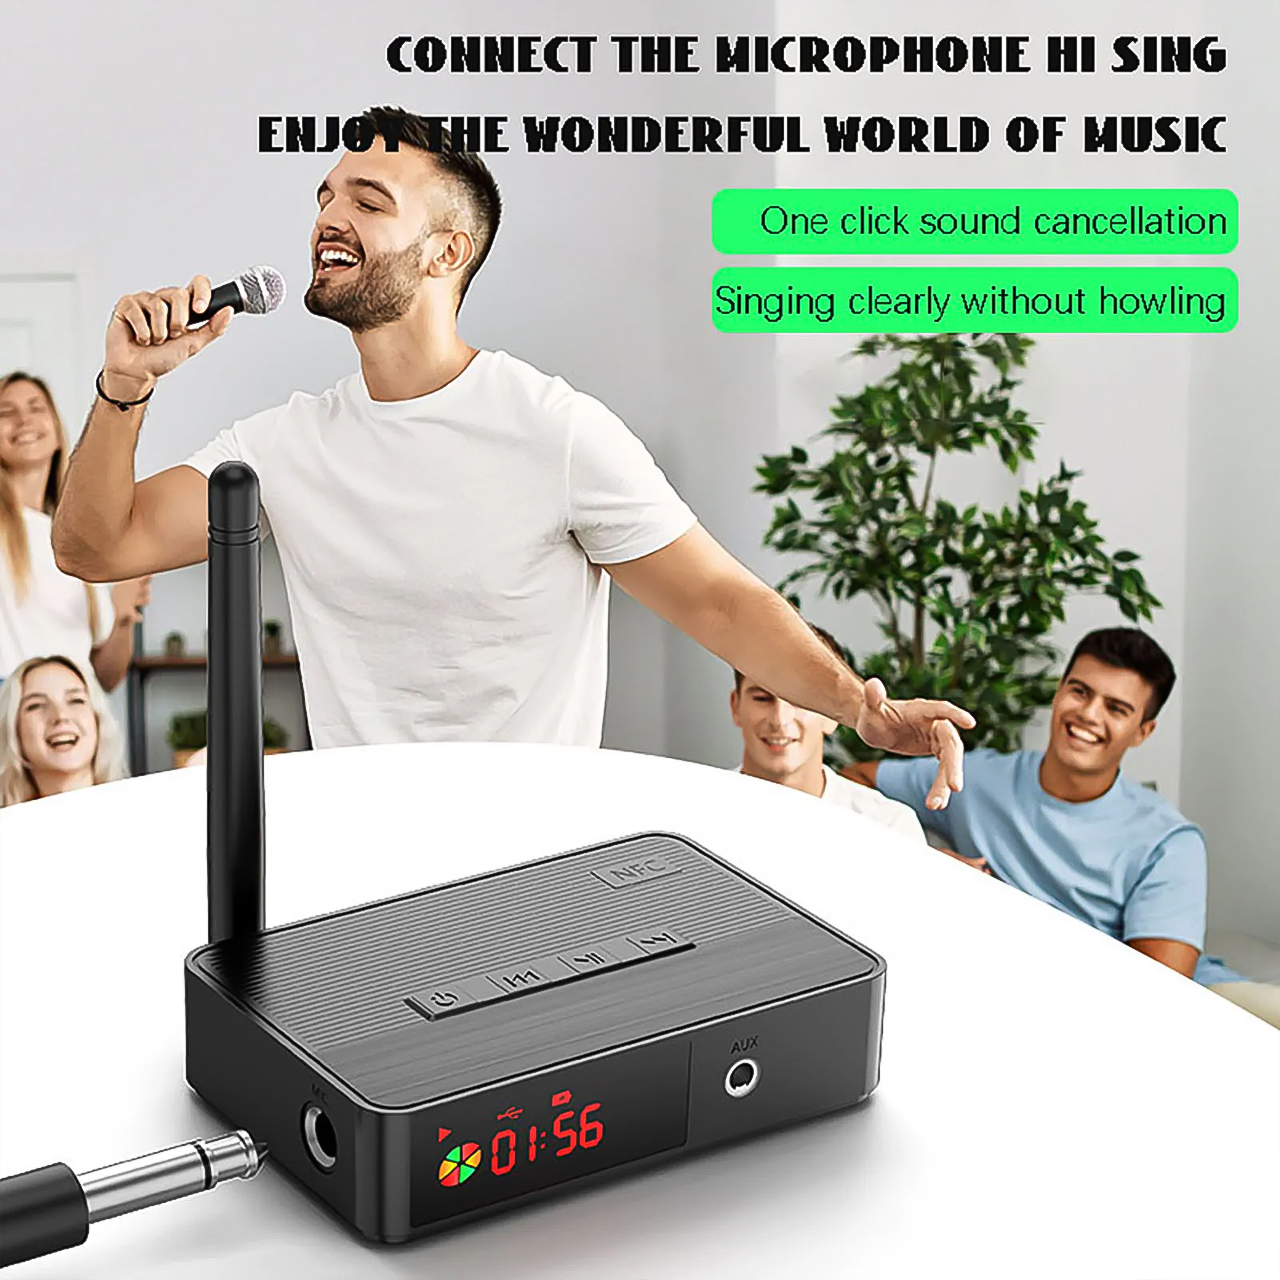 Bộ Chuyển Đổi Âm Thanh Không Dây Vinetteam NFC D400 Bluetooth 5.3 hỗ trợ 3.5mm Aux/Quang/Đồng Trục/Mic Karaoke 6.5mm/Thẻ TF/U Đĩa âm thanh hifi - hàng chính hãng